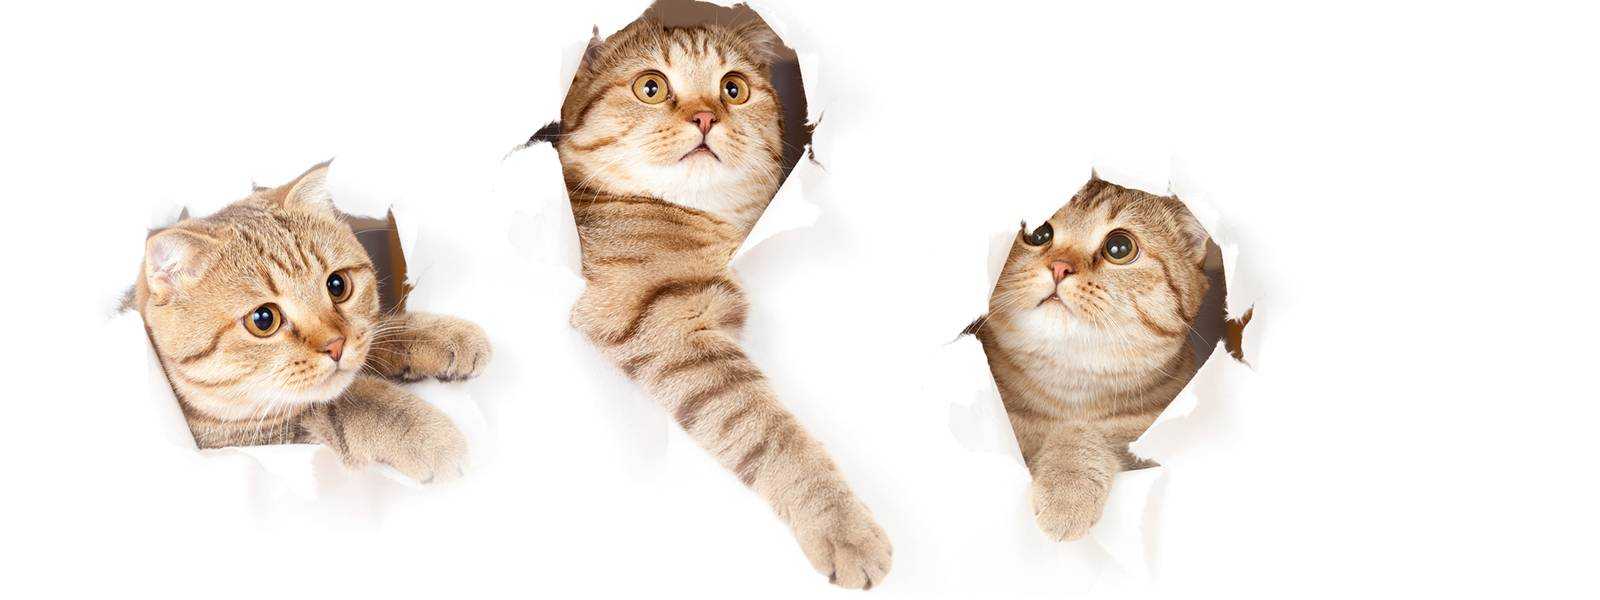 Обучение кошки использованию когтеточки и игры с ней